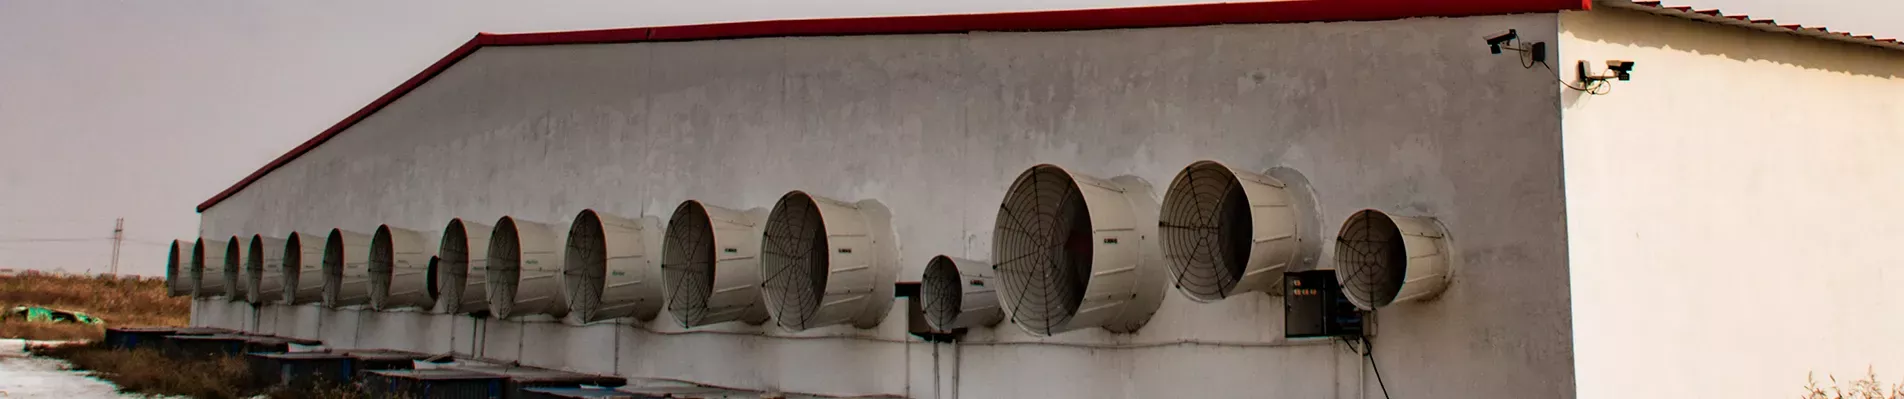 MF Roof Ventilation Fan